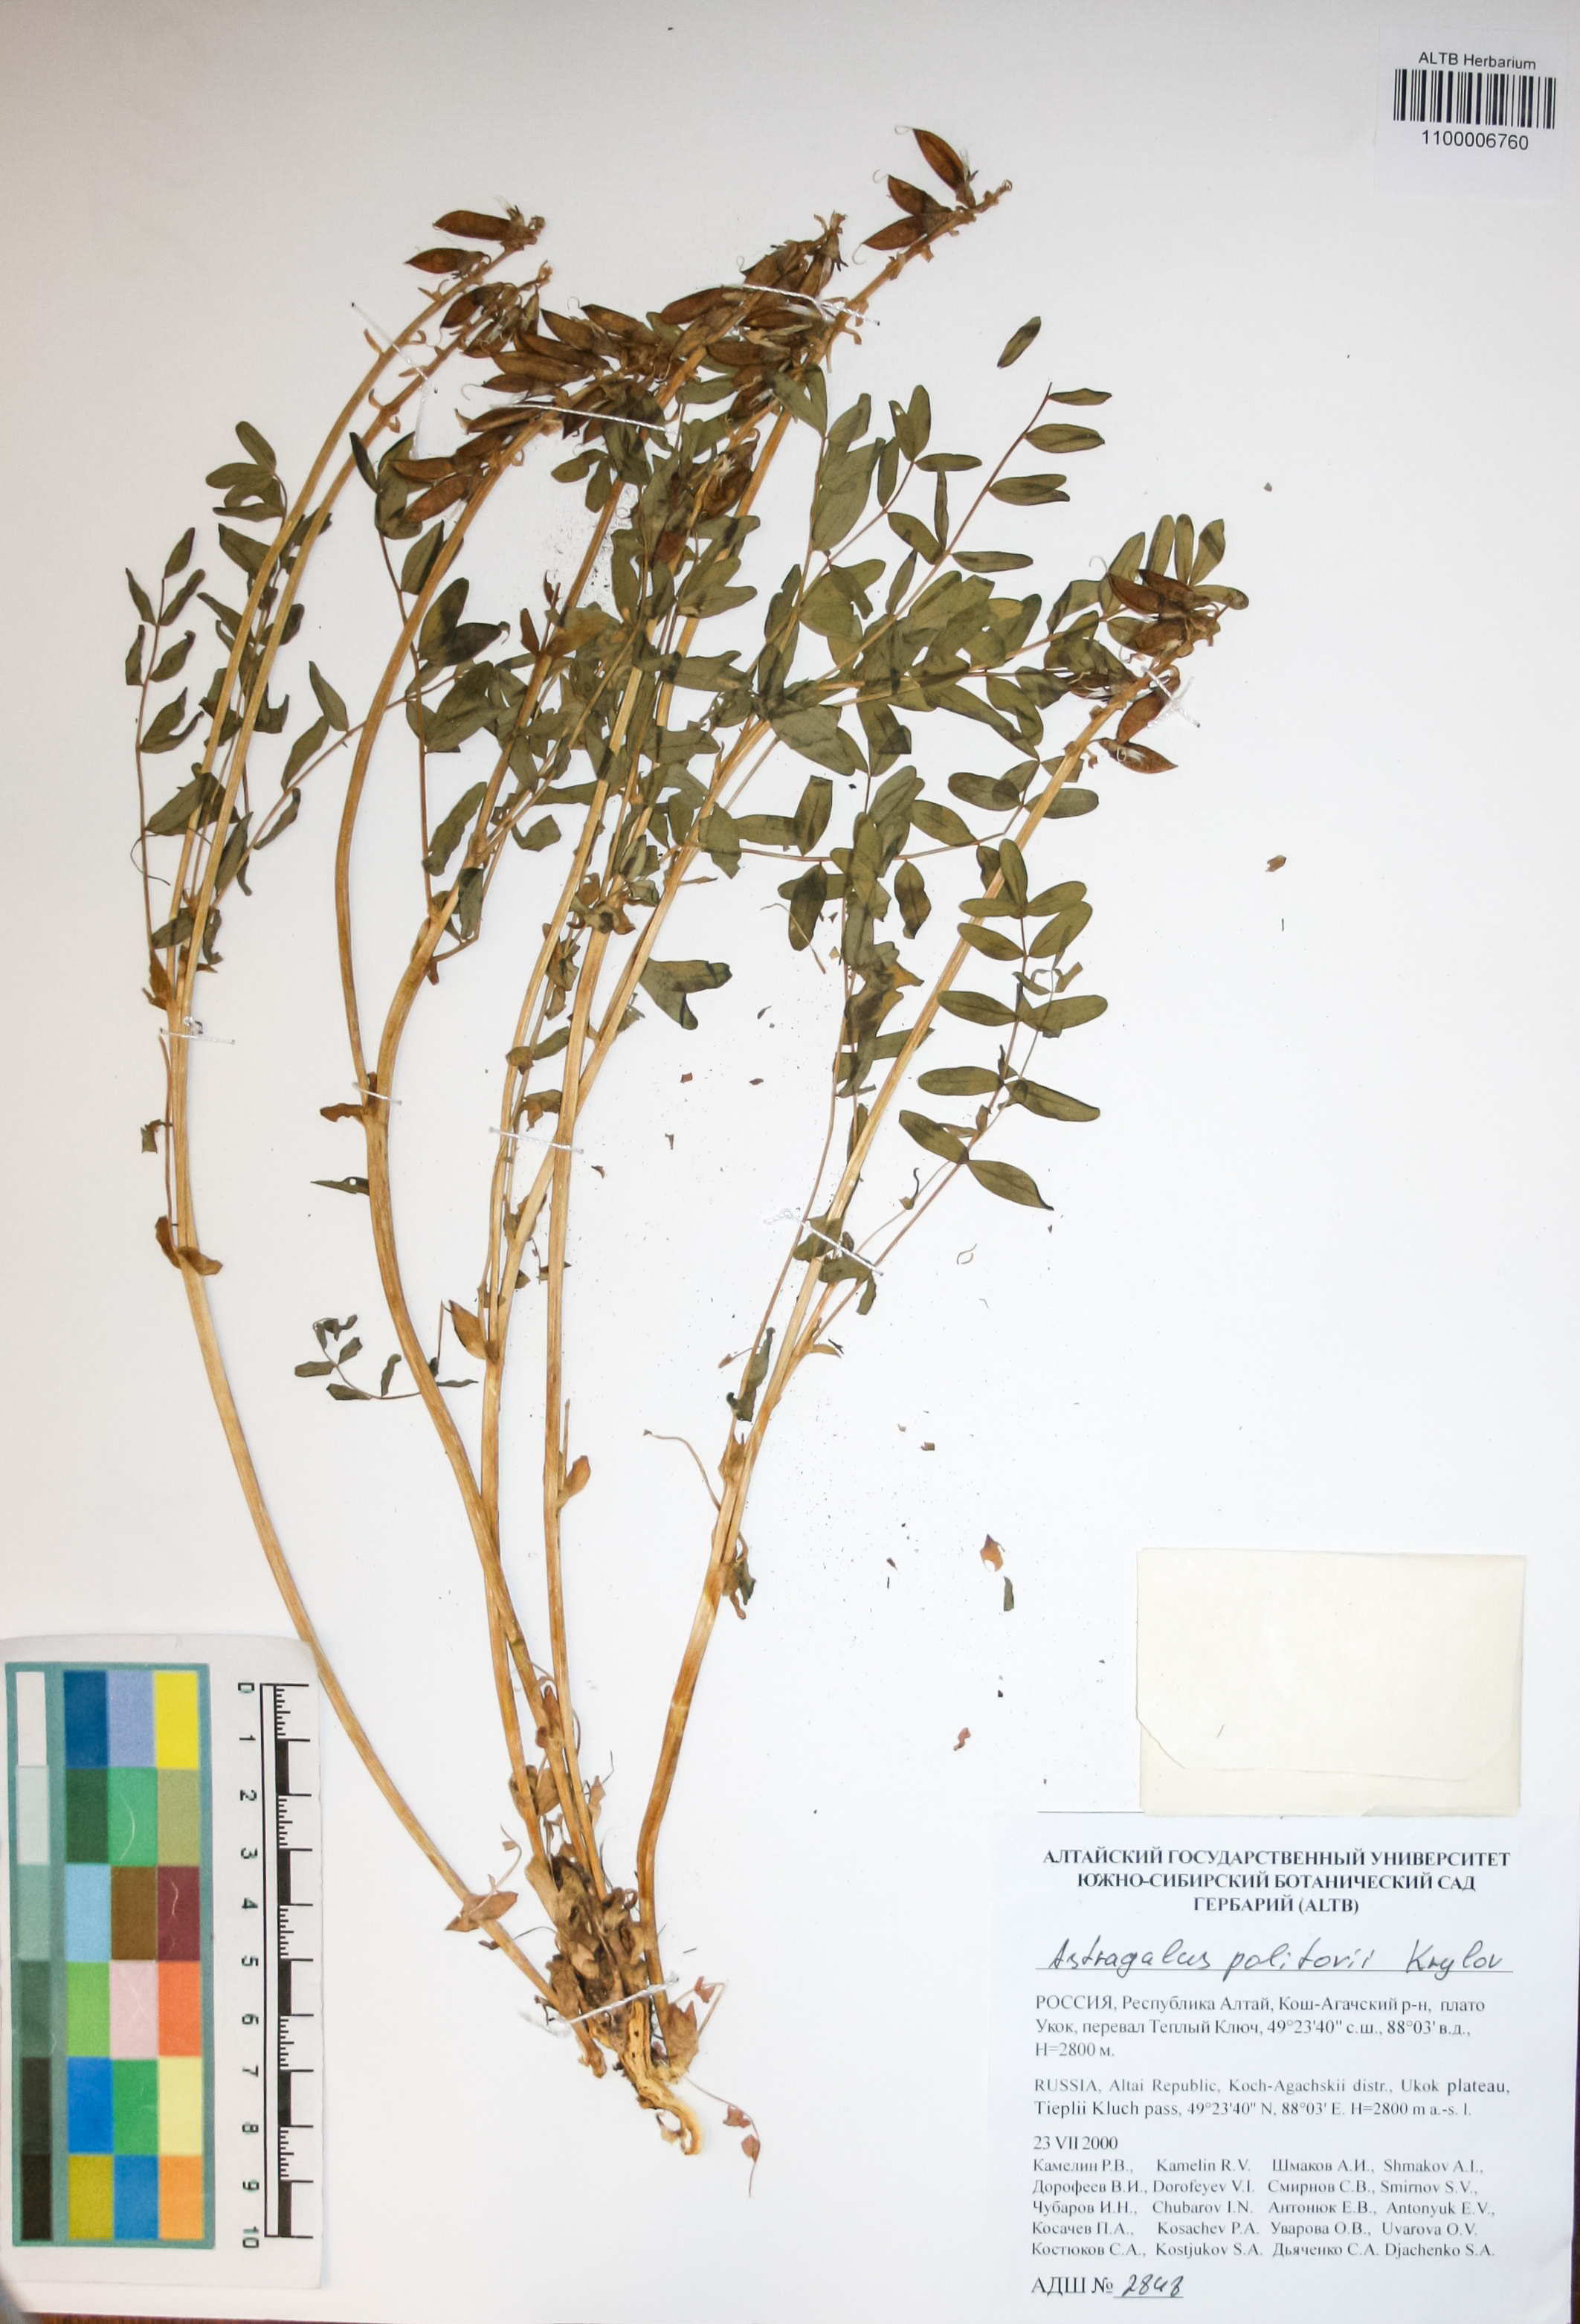 Fabaceae,Astragalus politovii Krylov